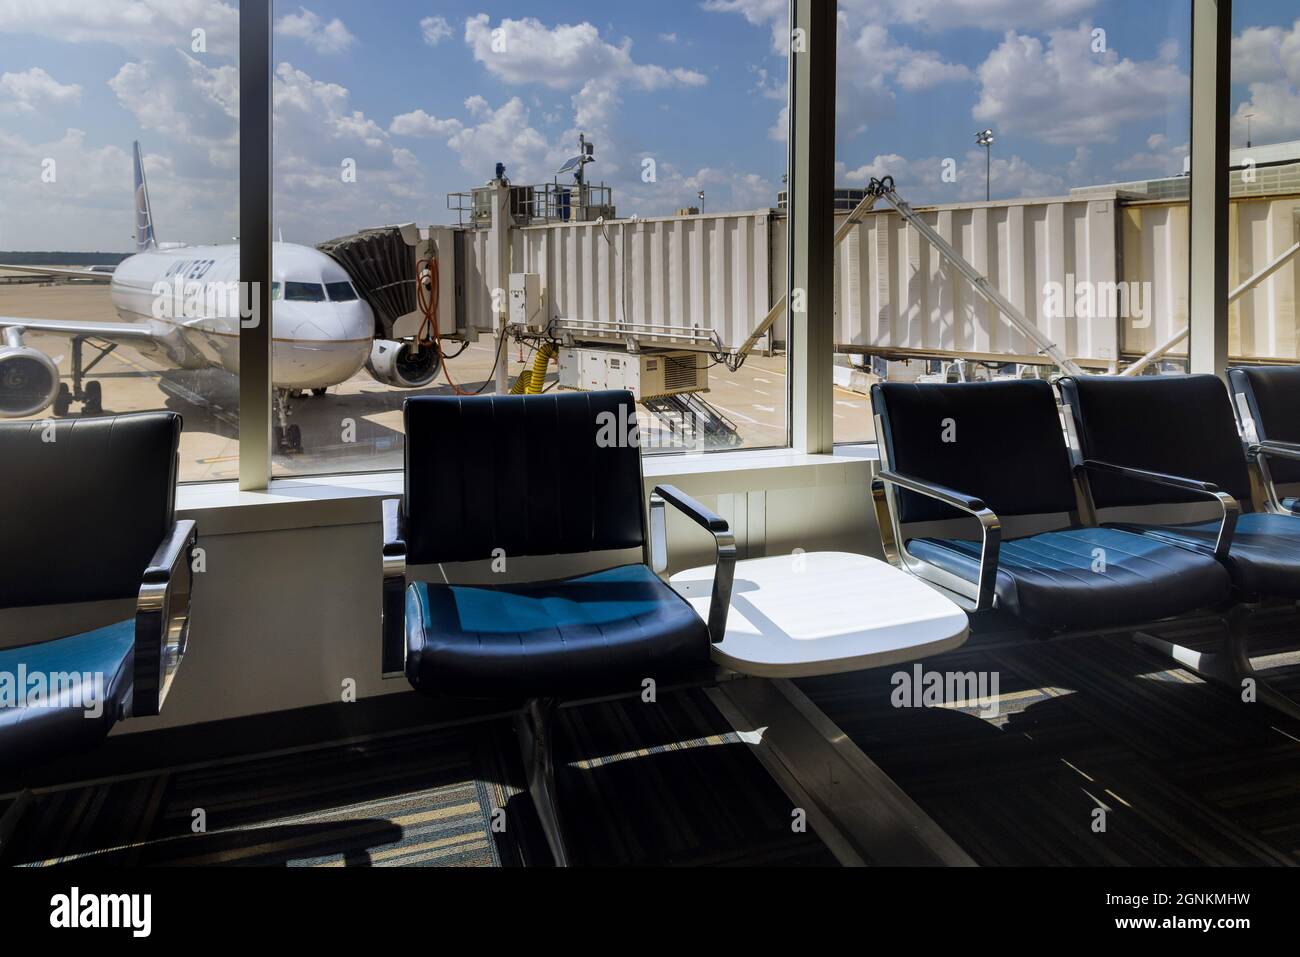 Vue de la zone de départ chaises d'attente avions de United Airlines l'aéroport intercontinental George Bush IAH à Houston, Texas, États-Unis. Banque D'Images